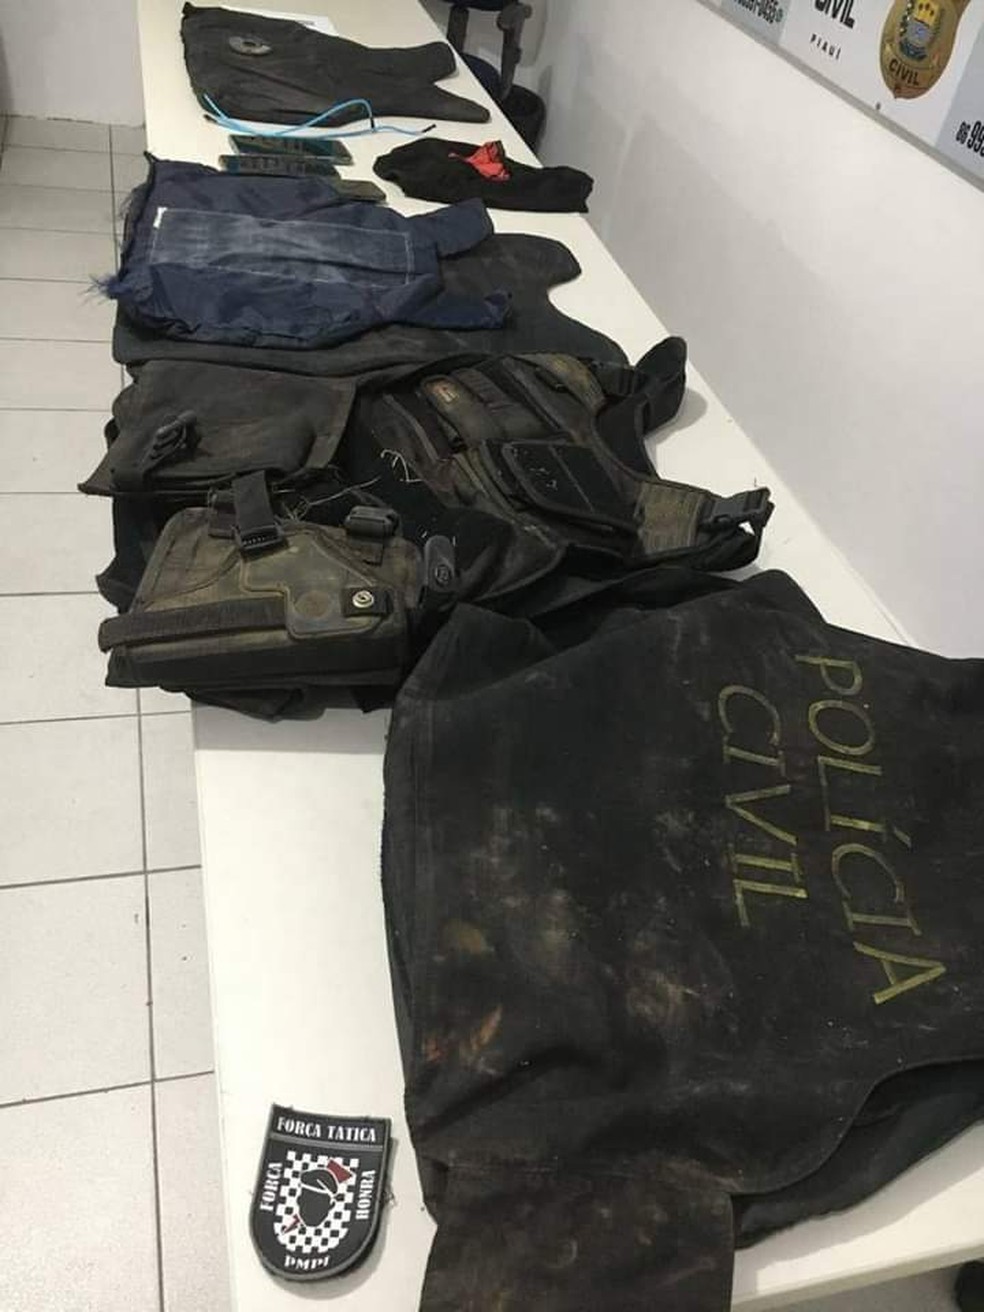 Coletes da polícia são encontrados nas duas malas — Foto: Divulgação /PM-PI